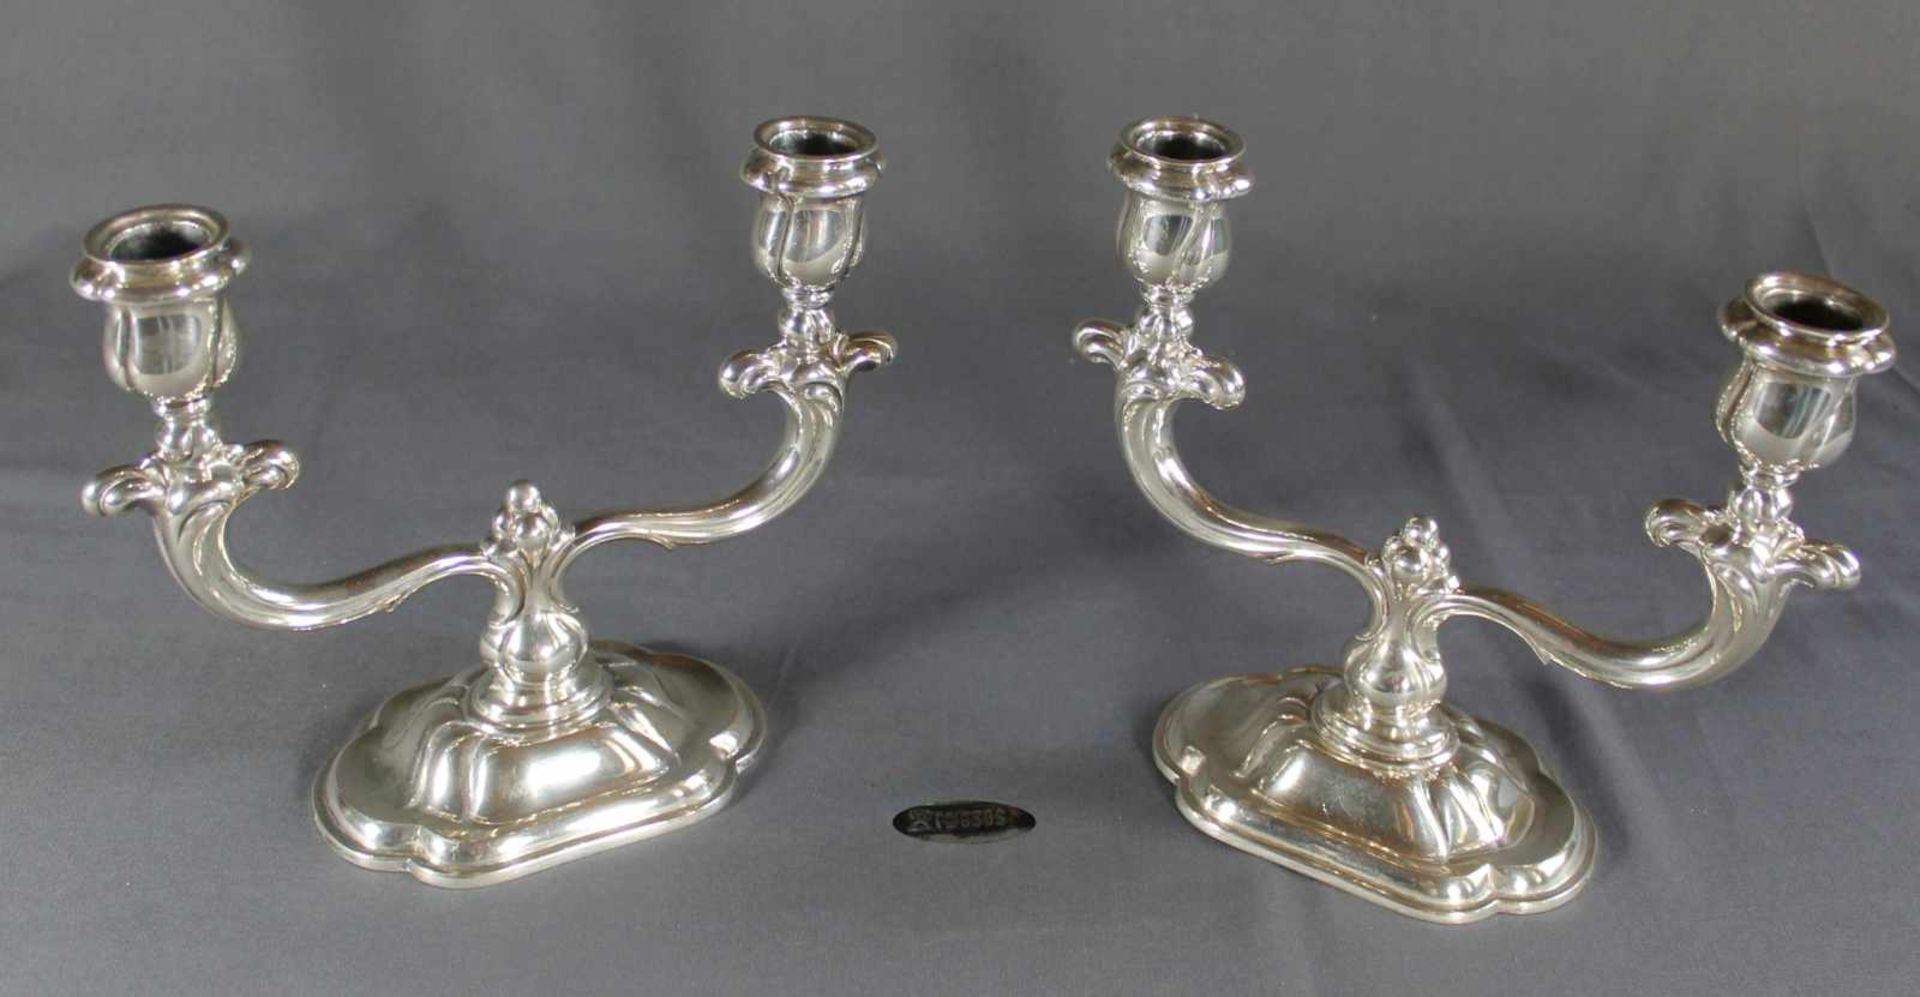 1 Paar Kerzenleuchter 2-flammig, Silber (830/000), Punzen u.a. Halbmond und Krone, nummeriert